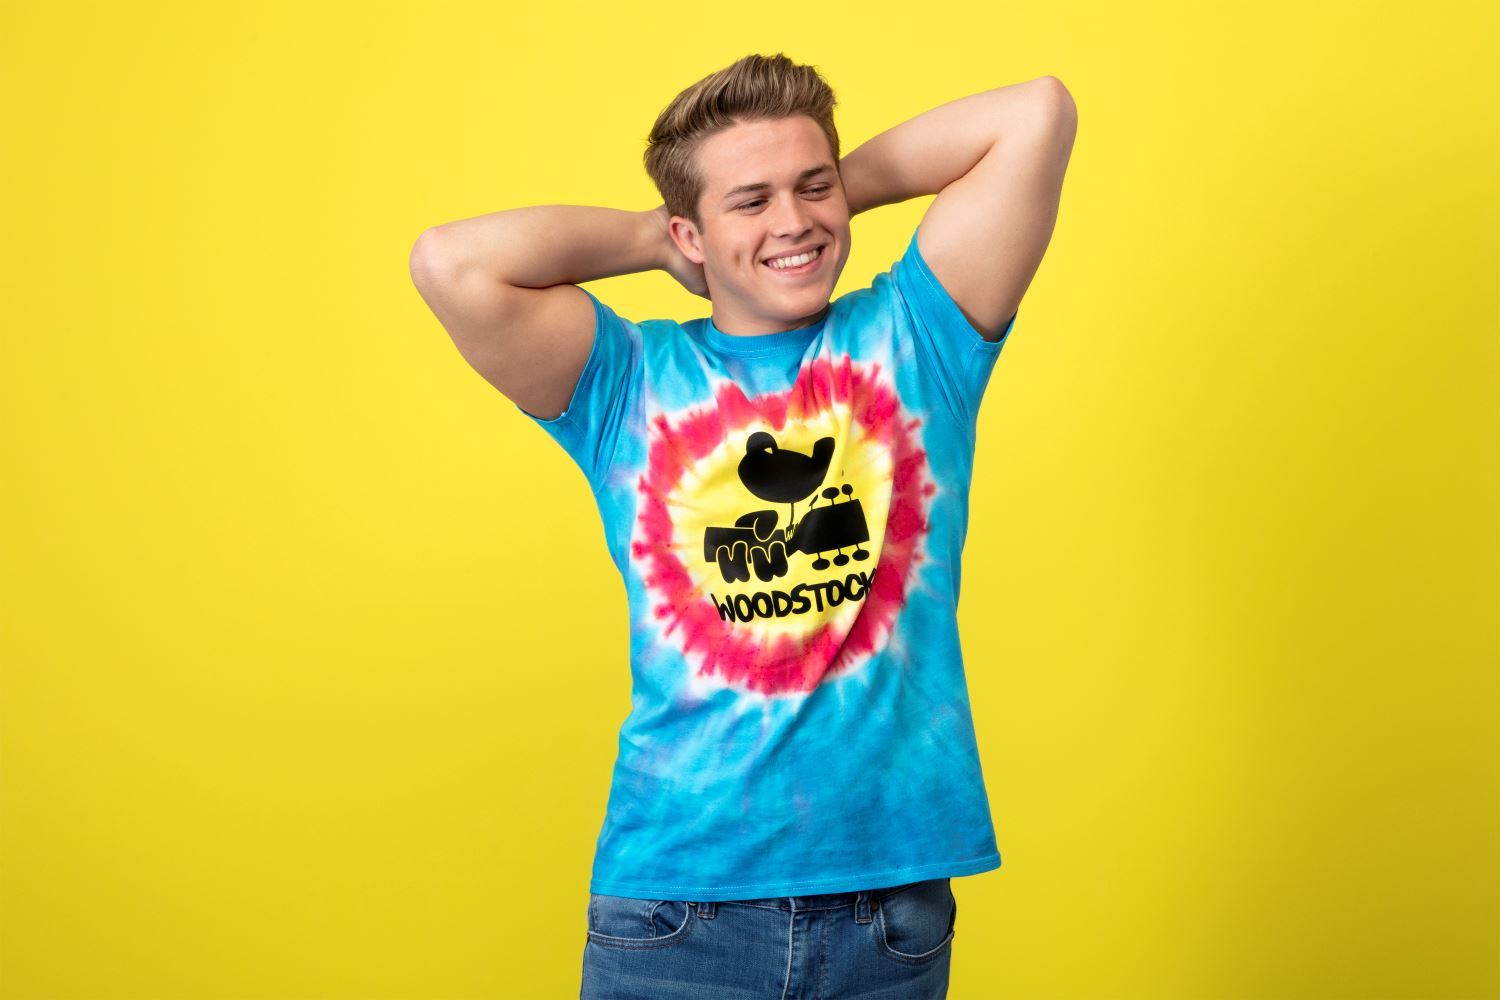 Woodstock Tie-Dye T-shirt